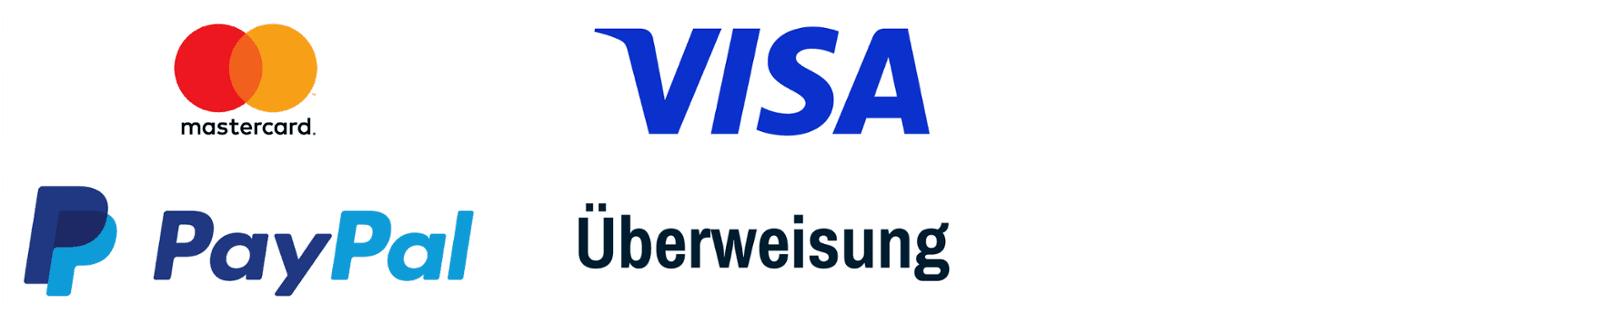 Qntrol akzeptiert Zahlungen per Paypal, Visa, Mastercard und Überweisung